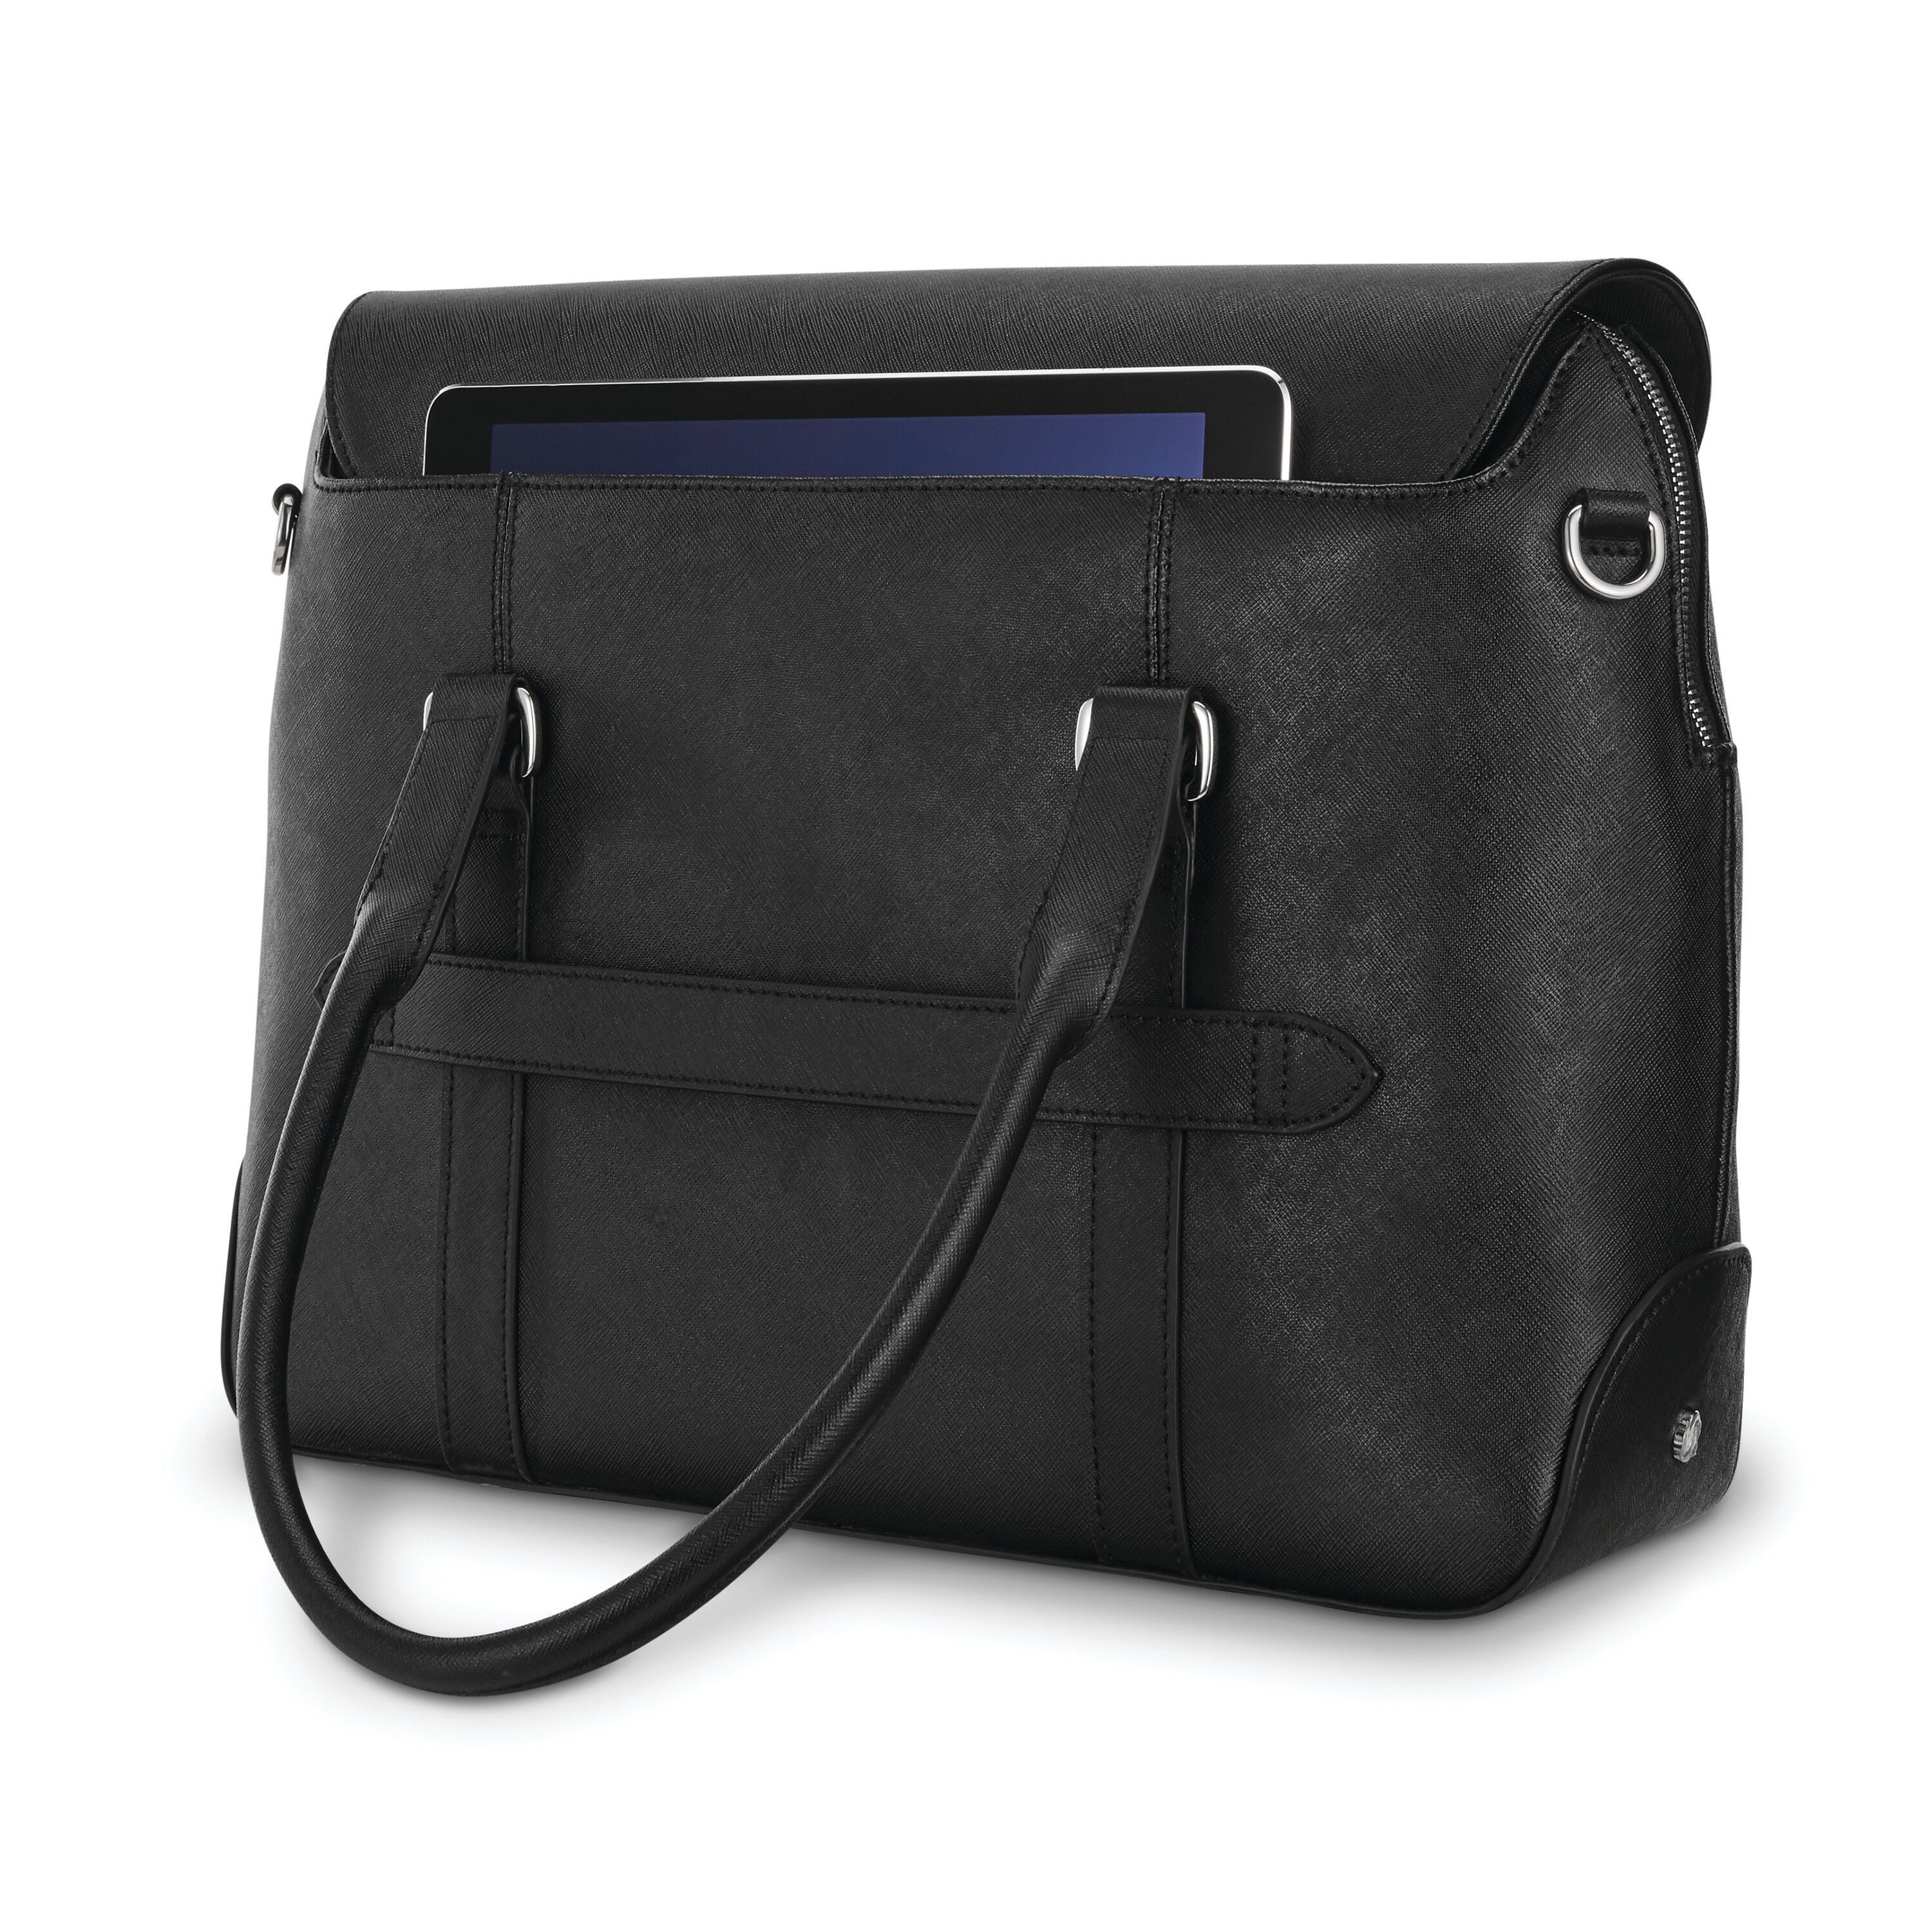 Samsonite black genuine leather women briefcase with … - Gem